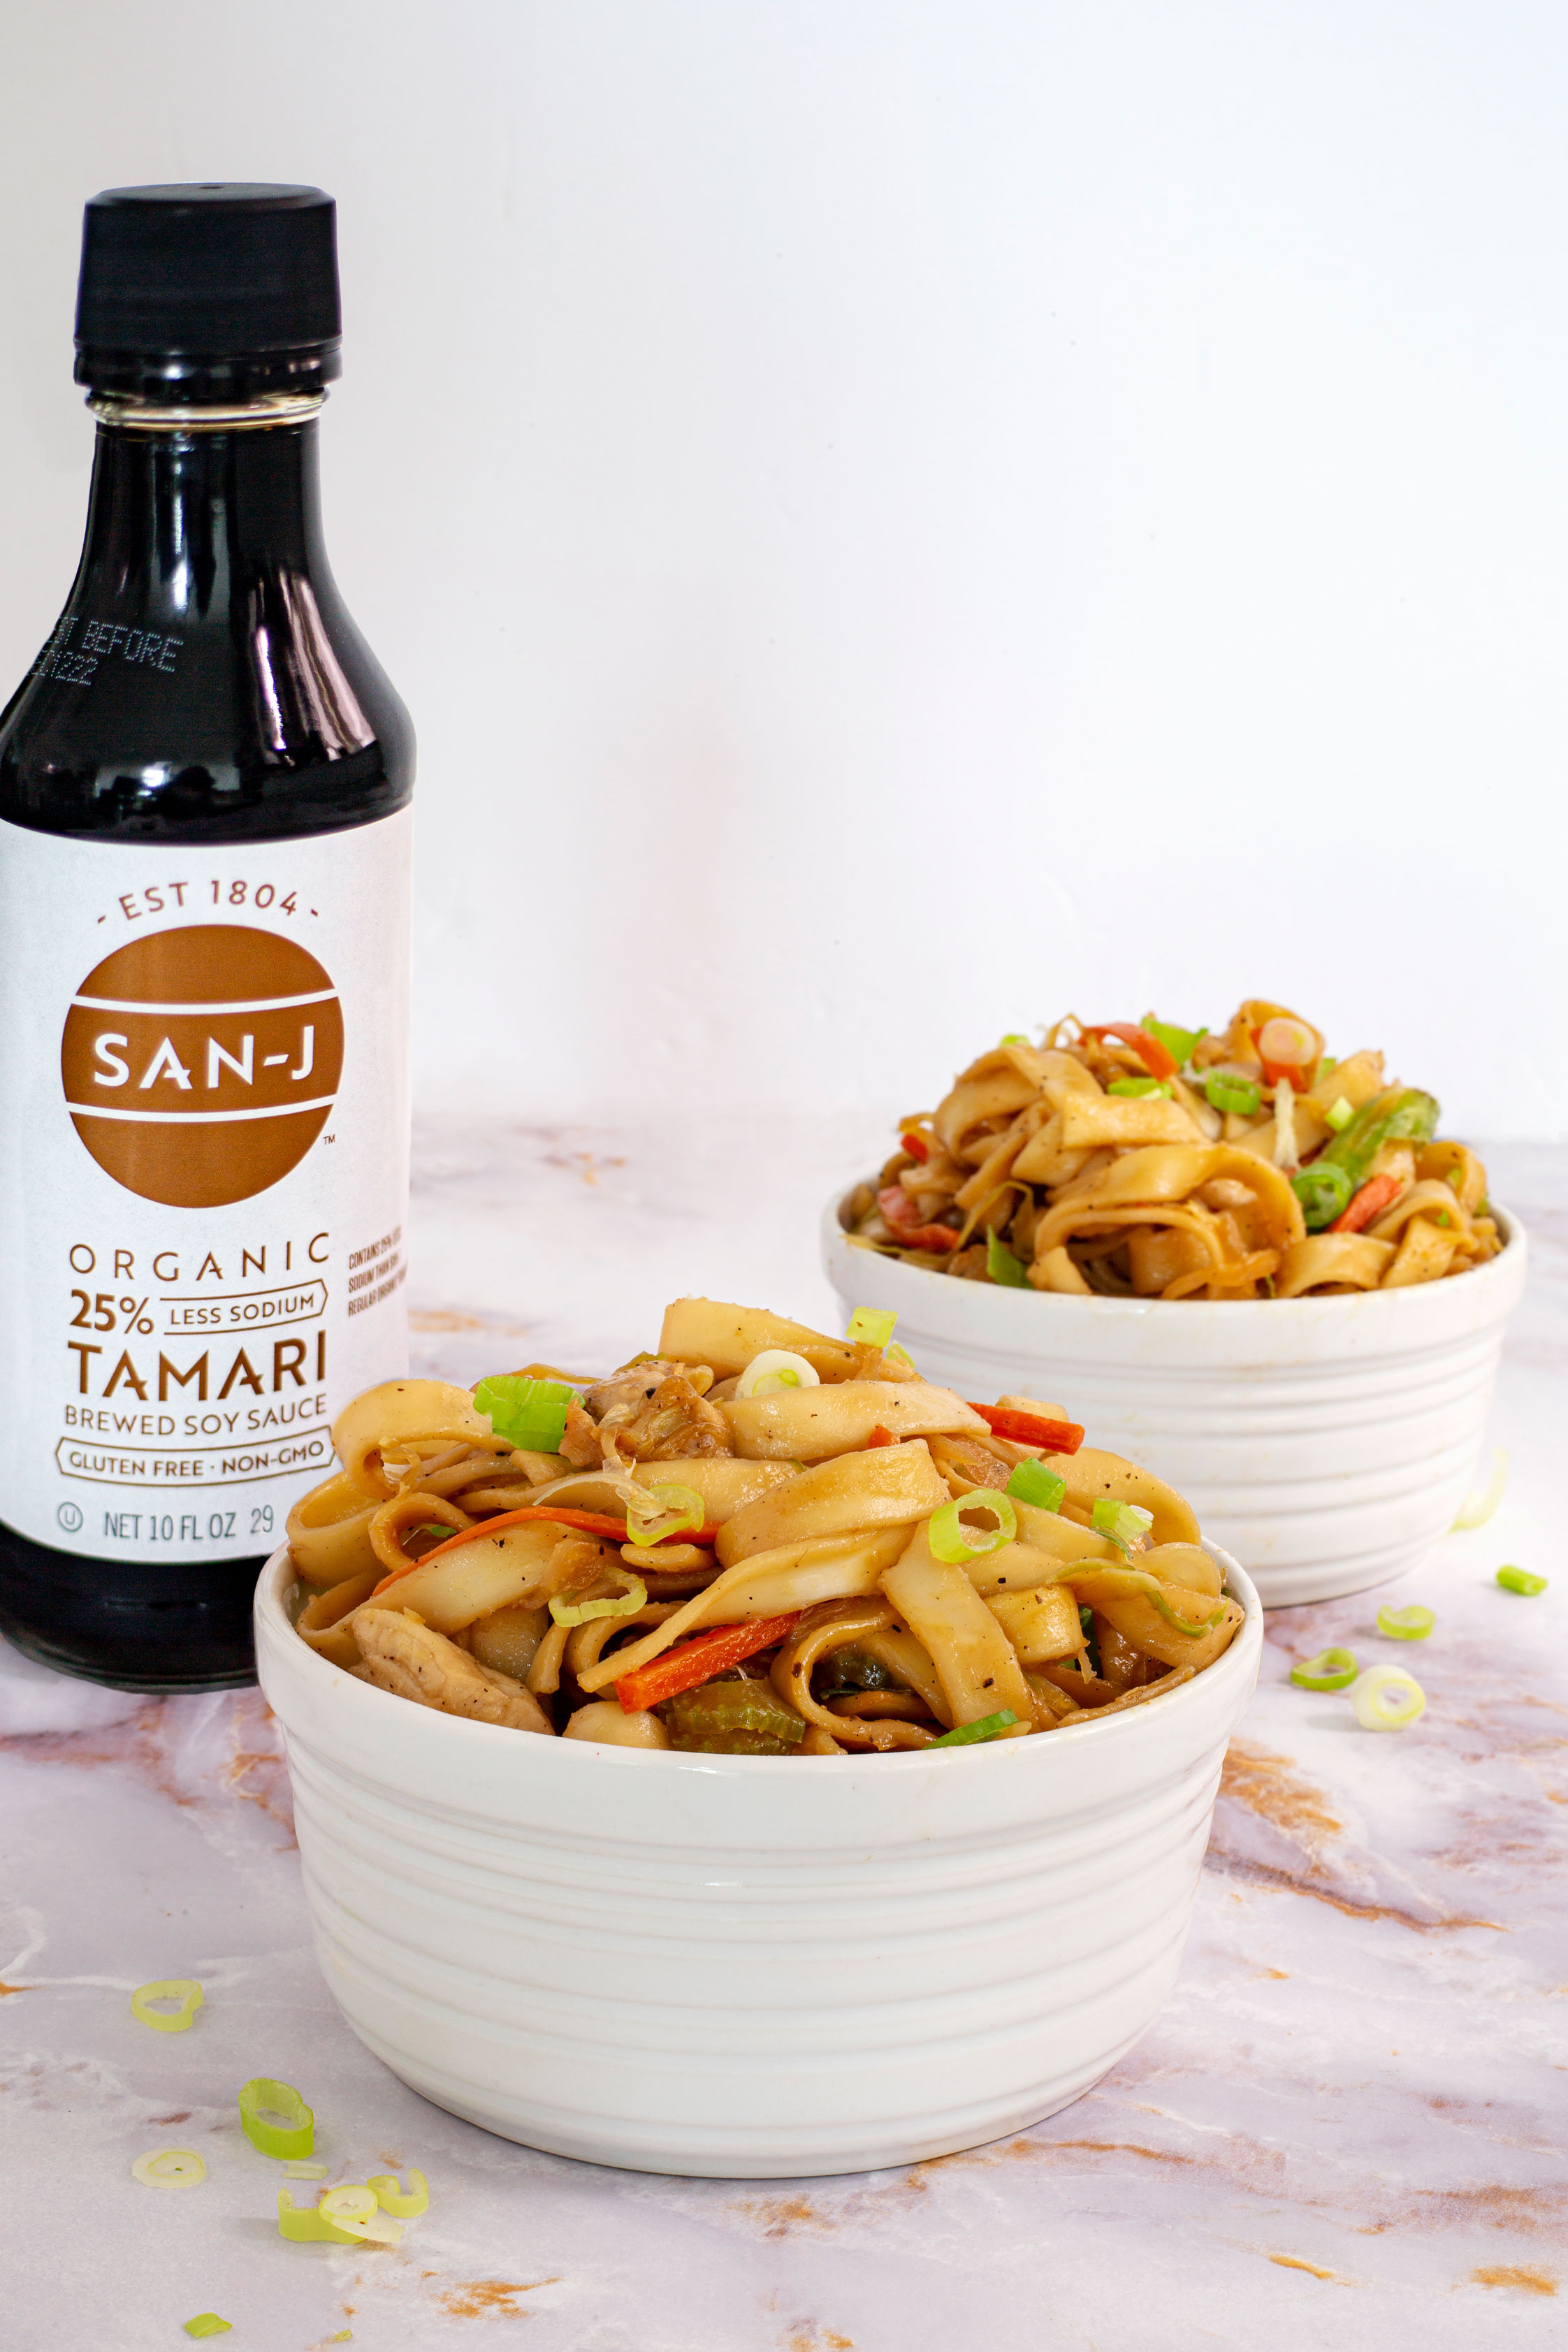 Chow mein with San-J Tamari